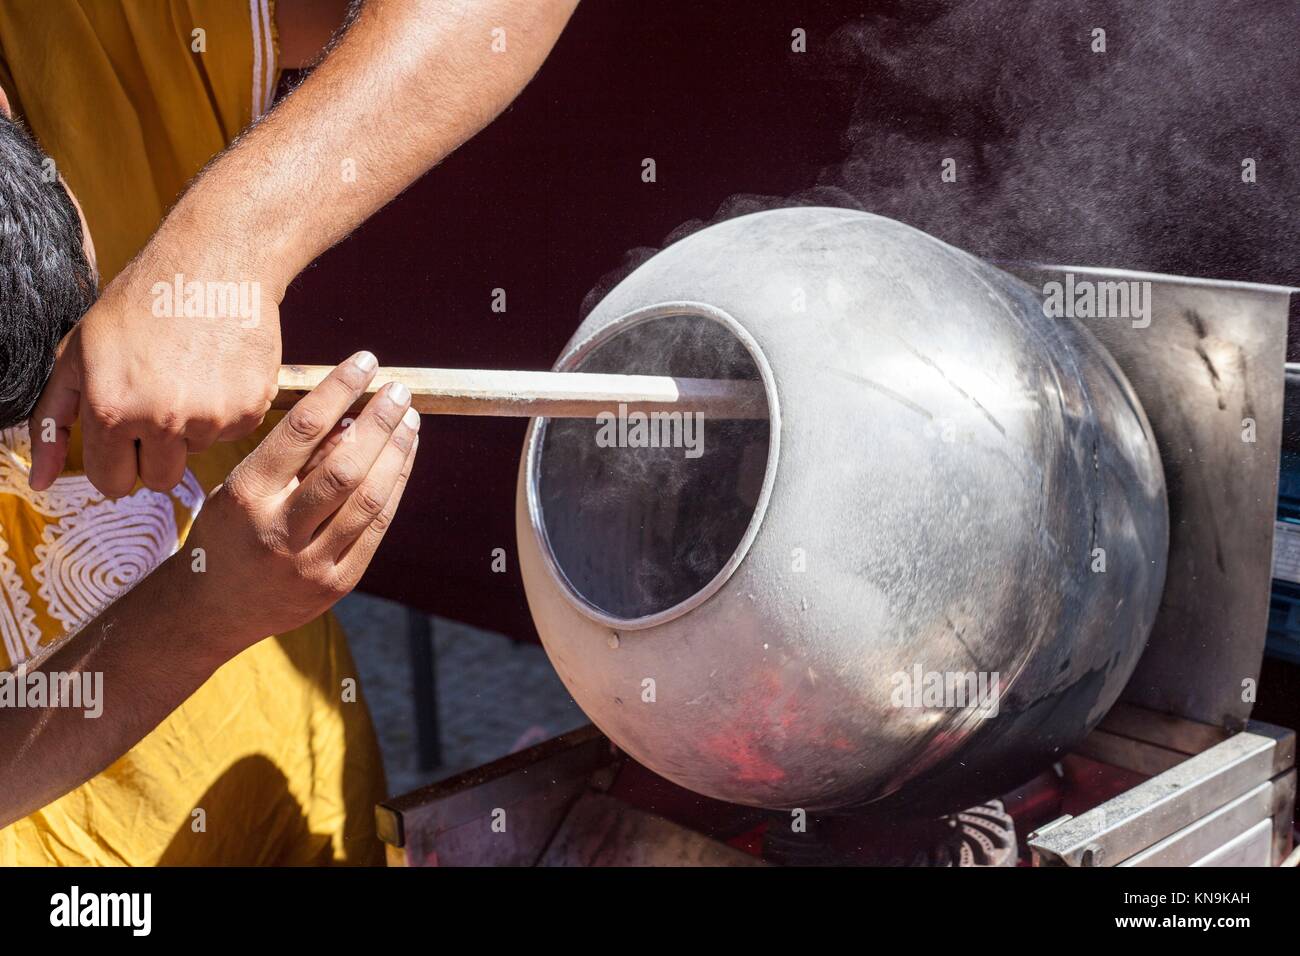 L'homme préparer les graines de tournesol enrobées de caramel avec longue cuillère en bois dans un pot rotatoire. Banque D'Images